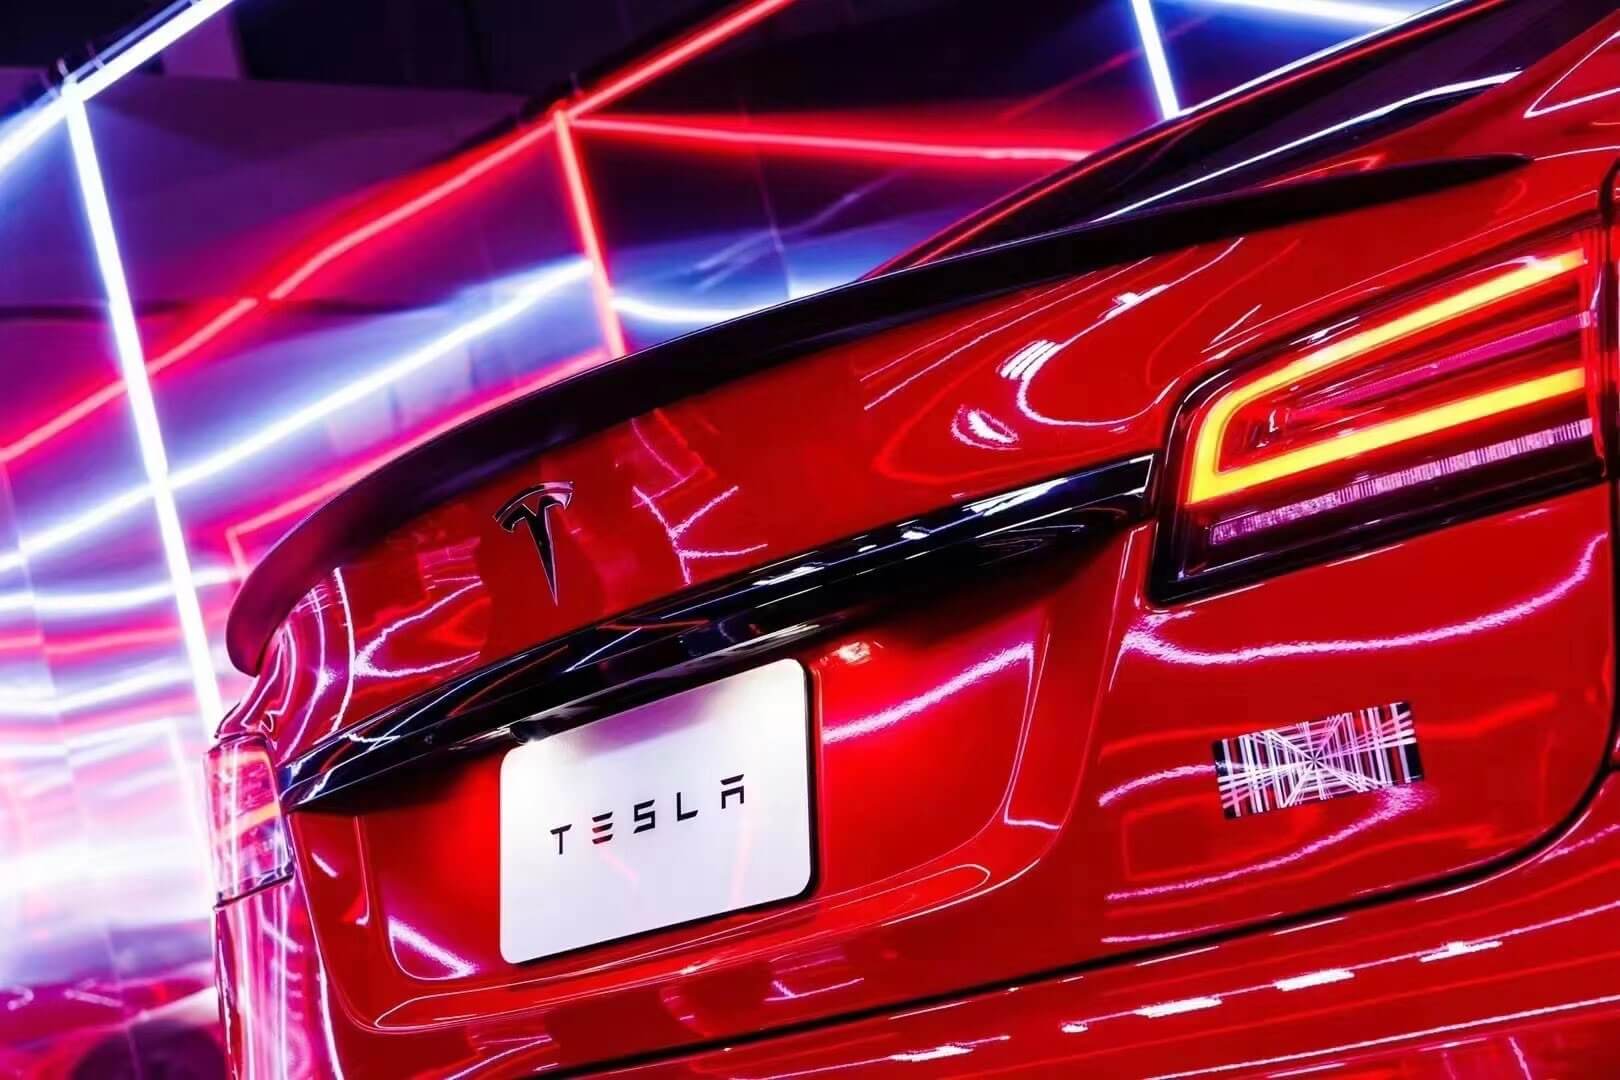 Teslas Neukunden kommen am häufigsten von Toyota, Honda: Studie